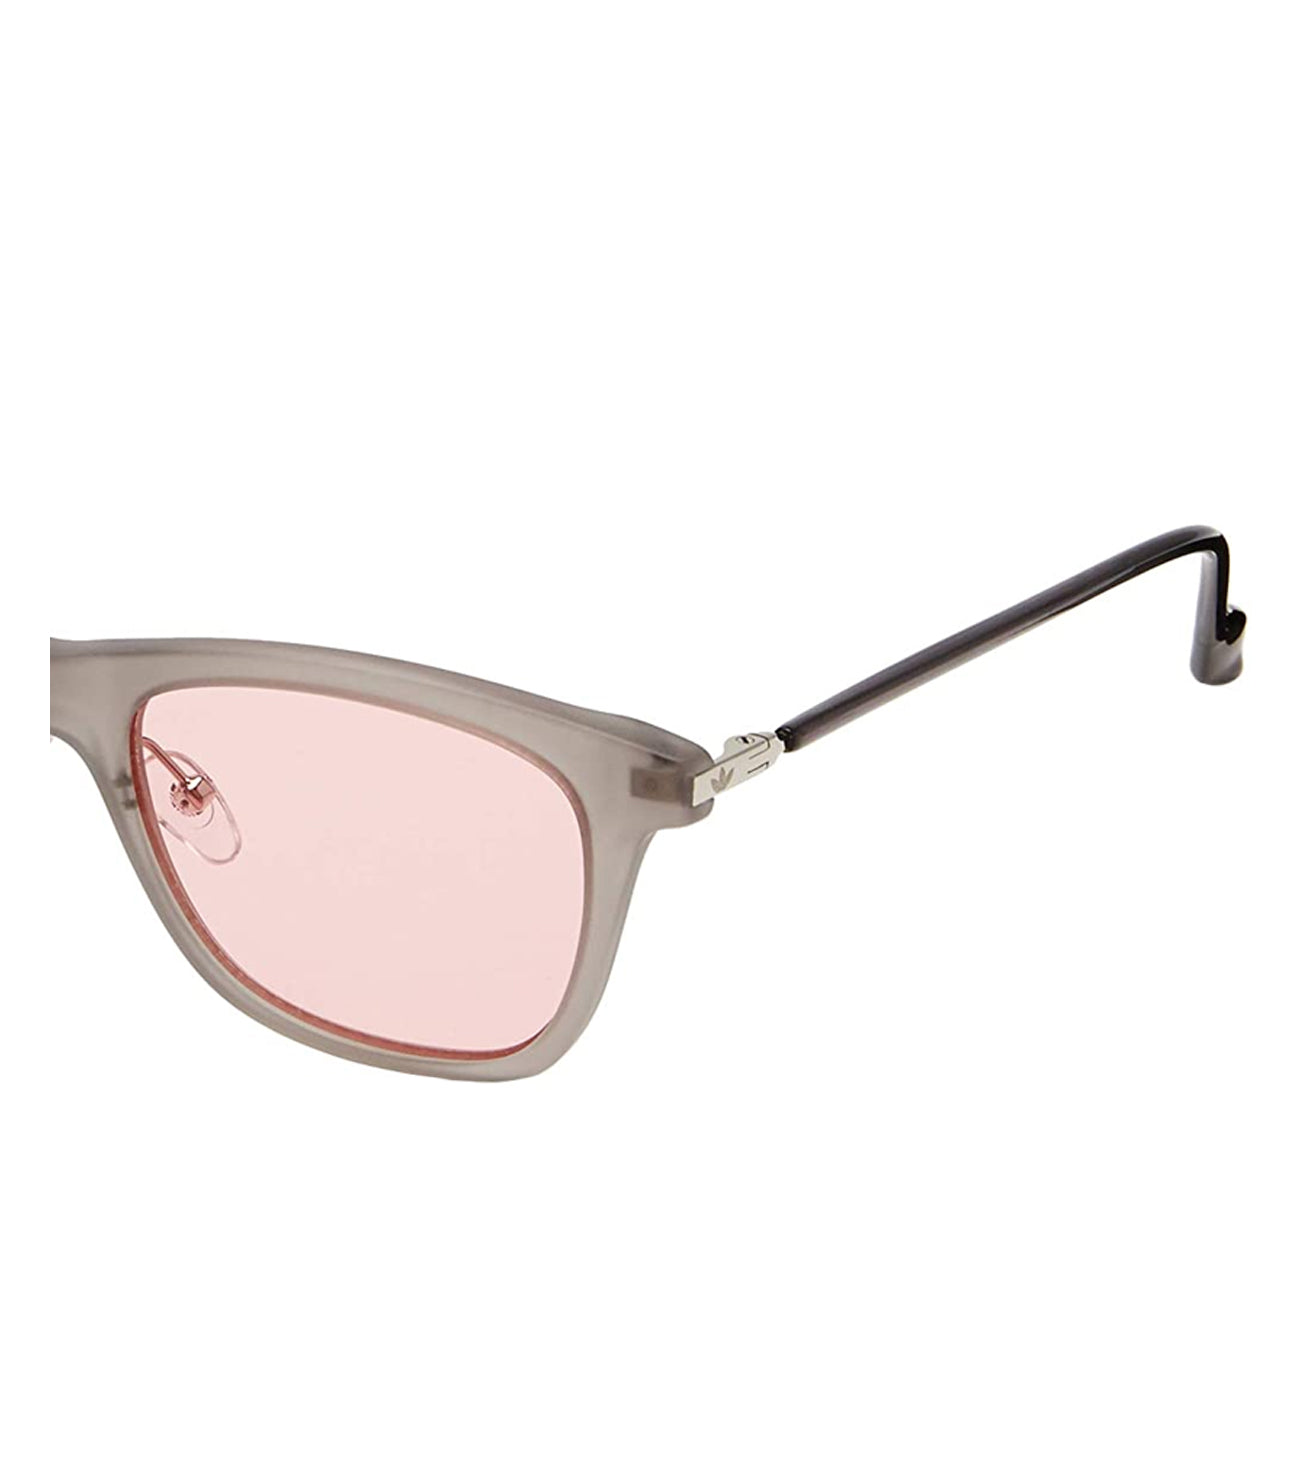 Adidas Originals Unisex Pink Square Sunglasses